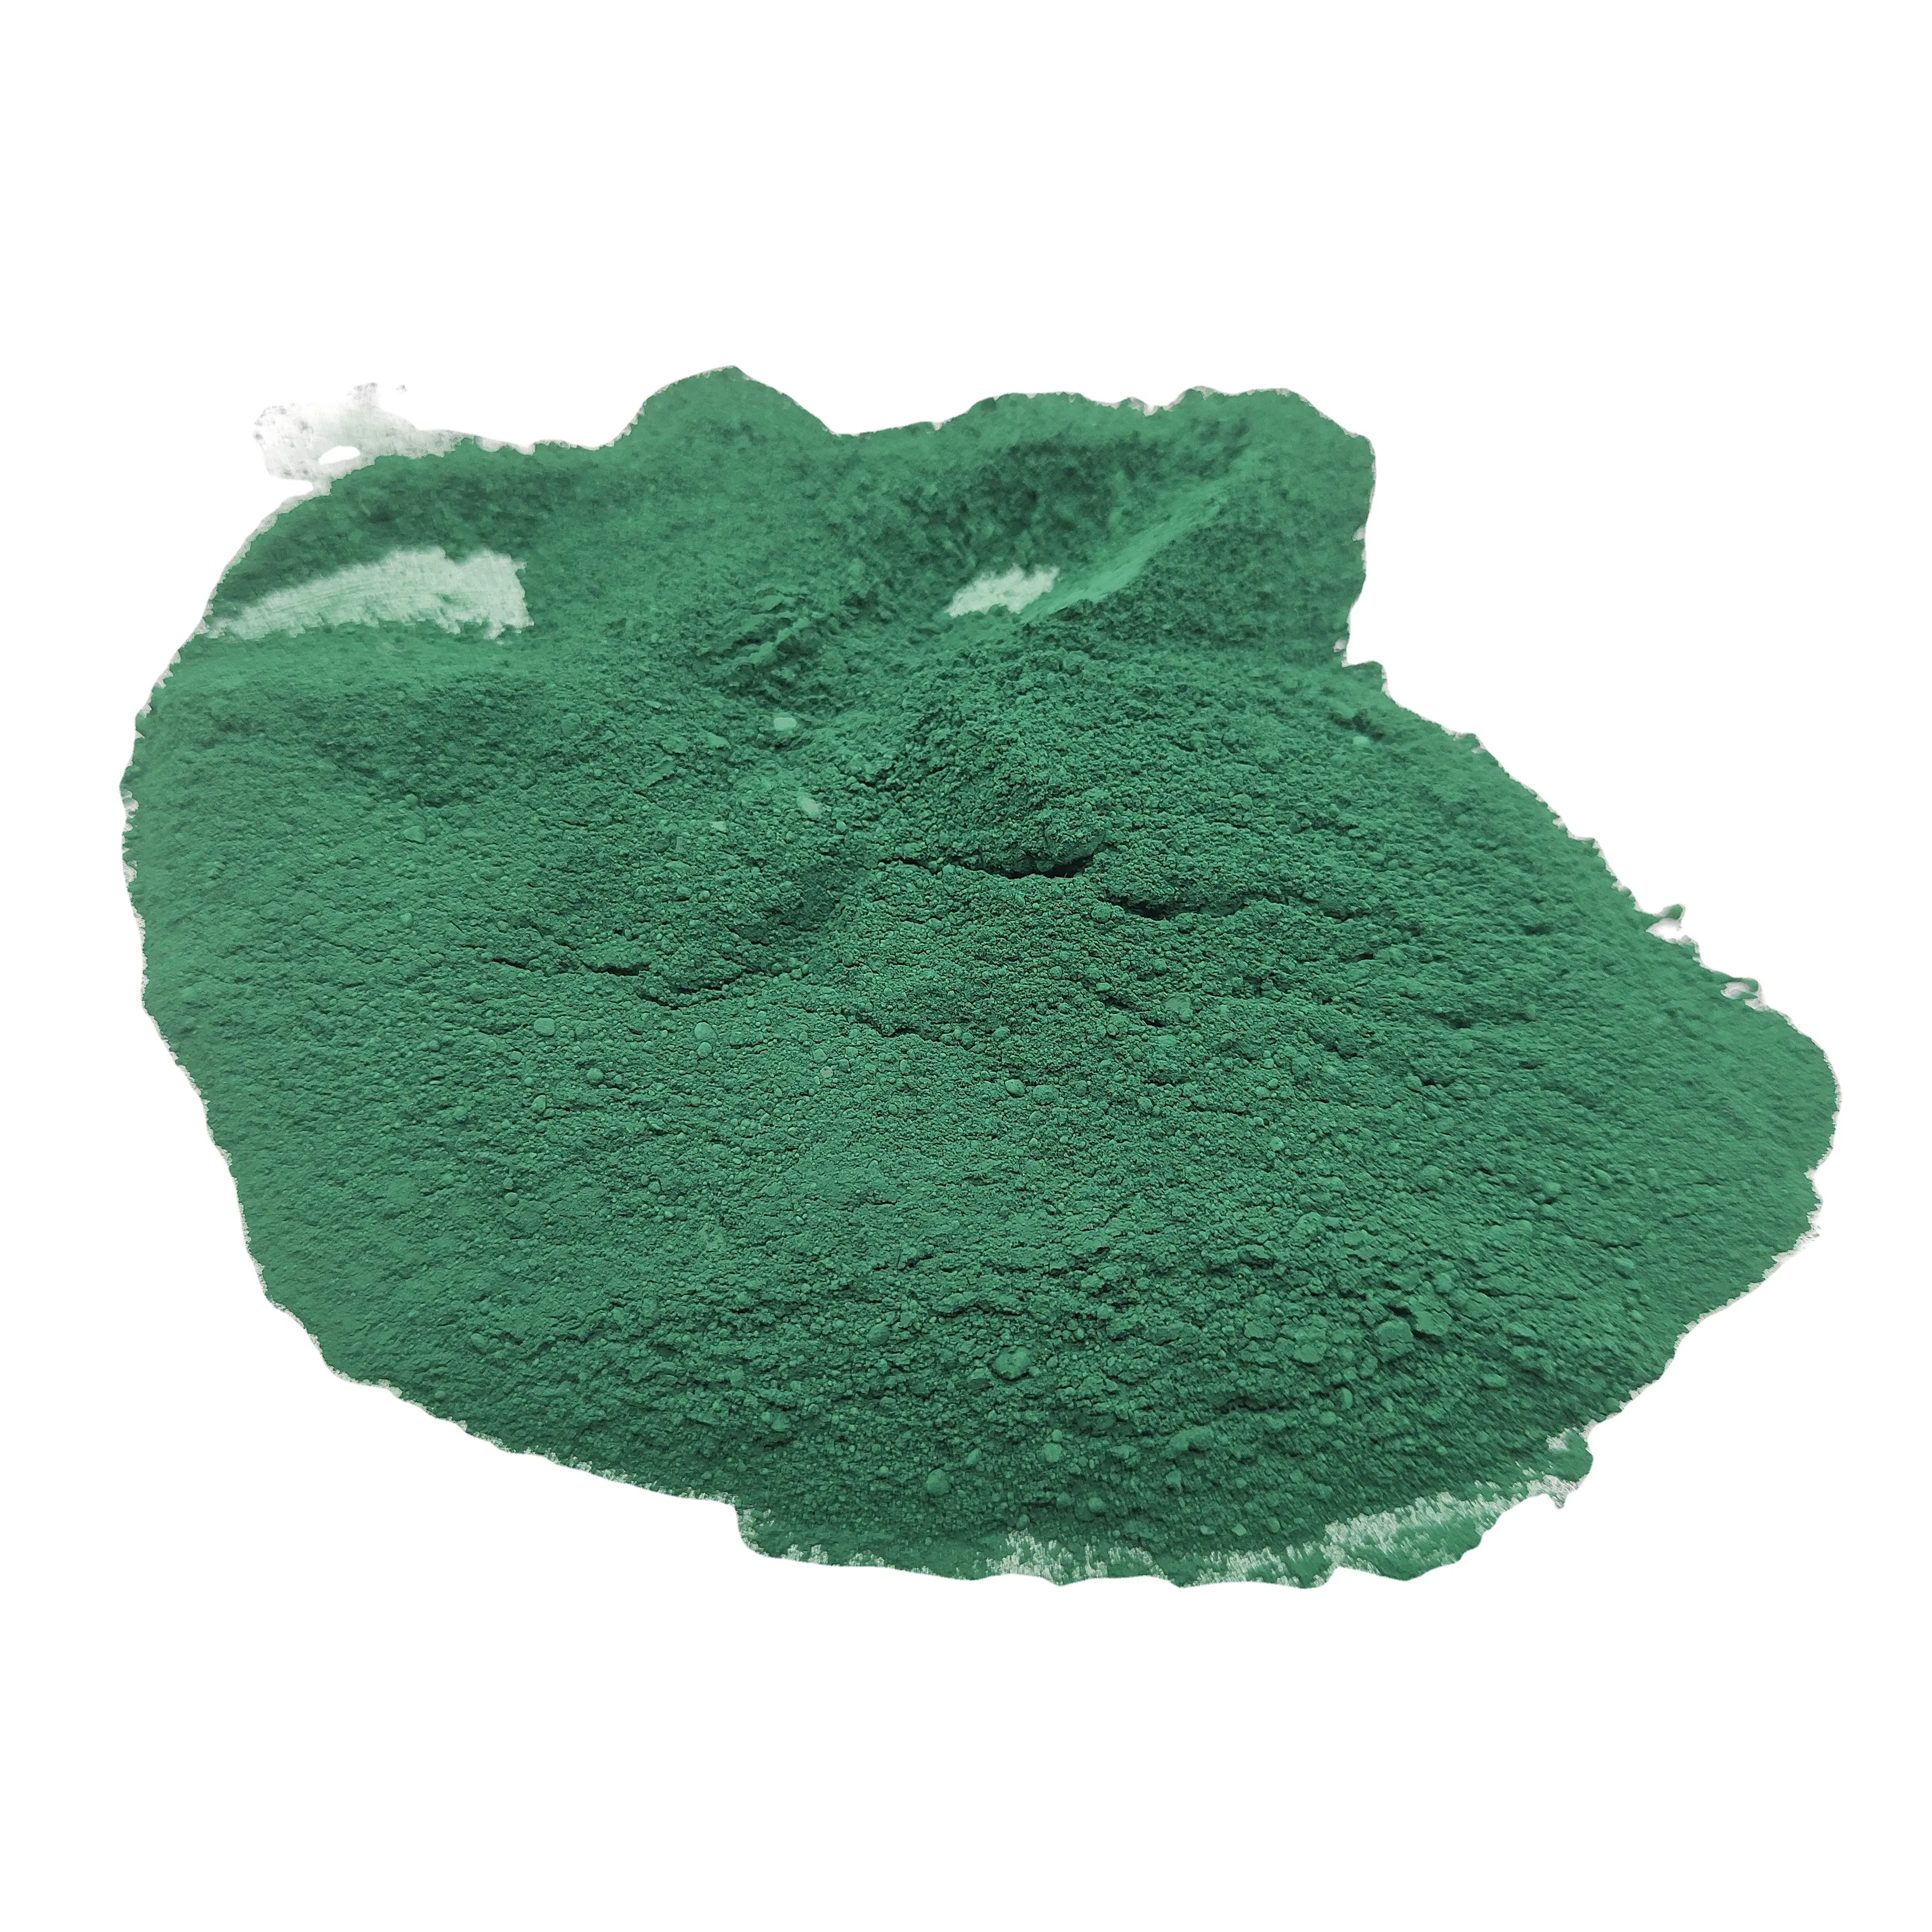 Оксид железа, зеленый порошок, пигмент, оптовая продажа, китайский завод